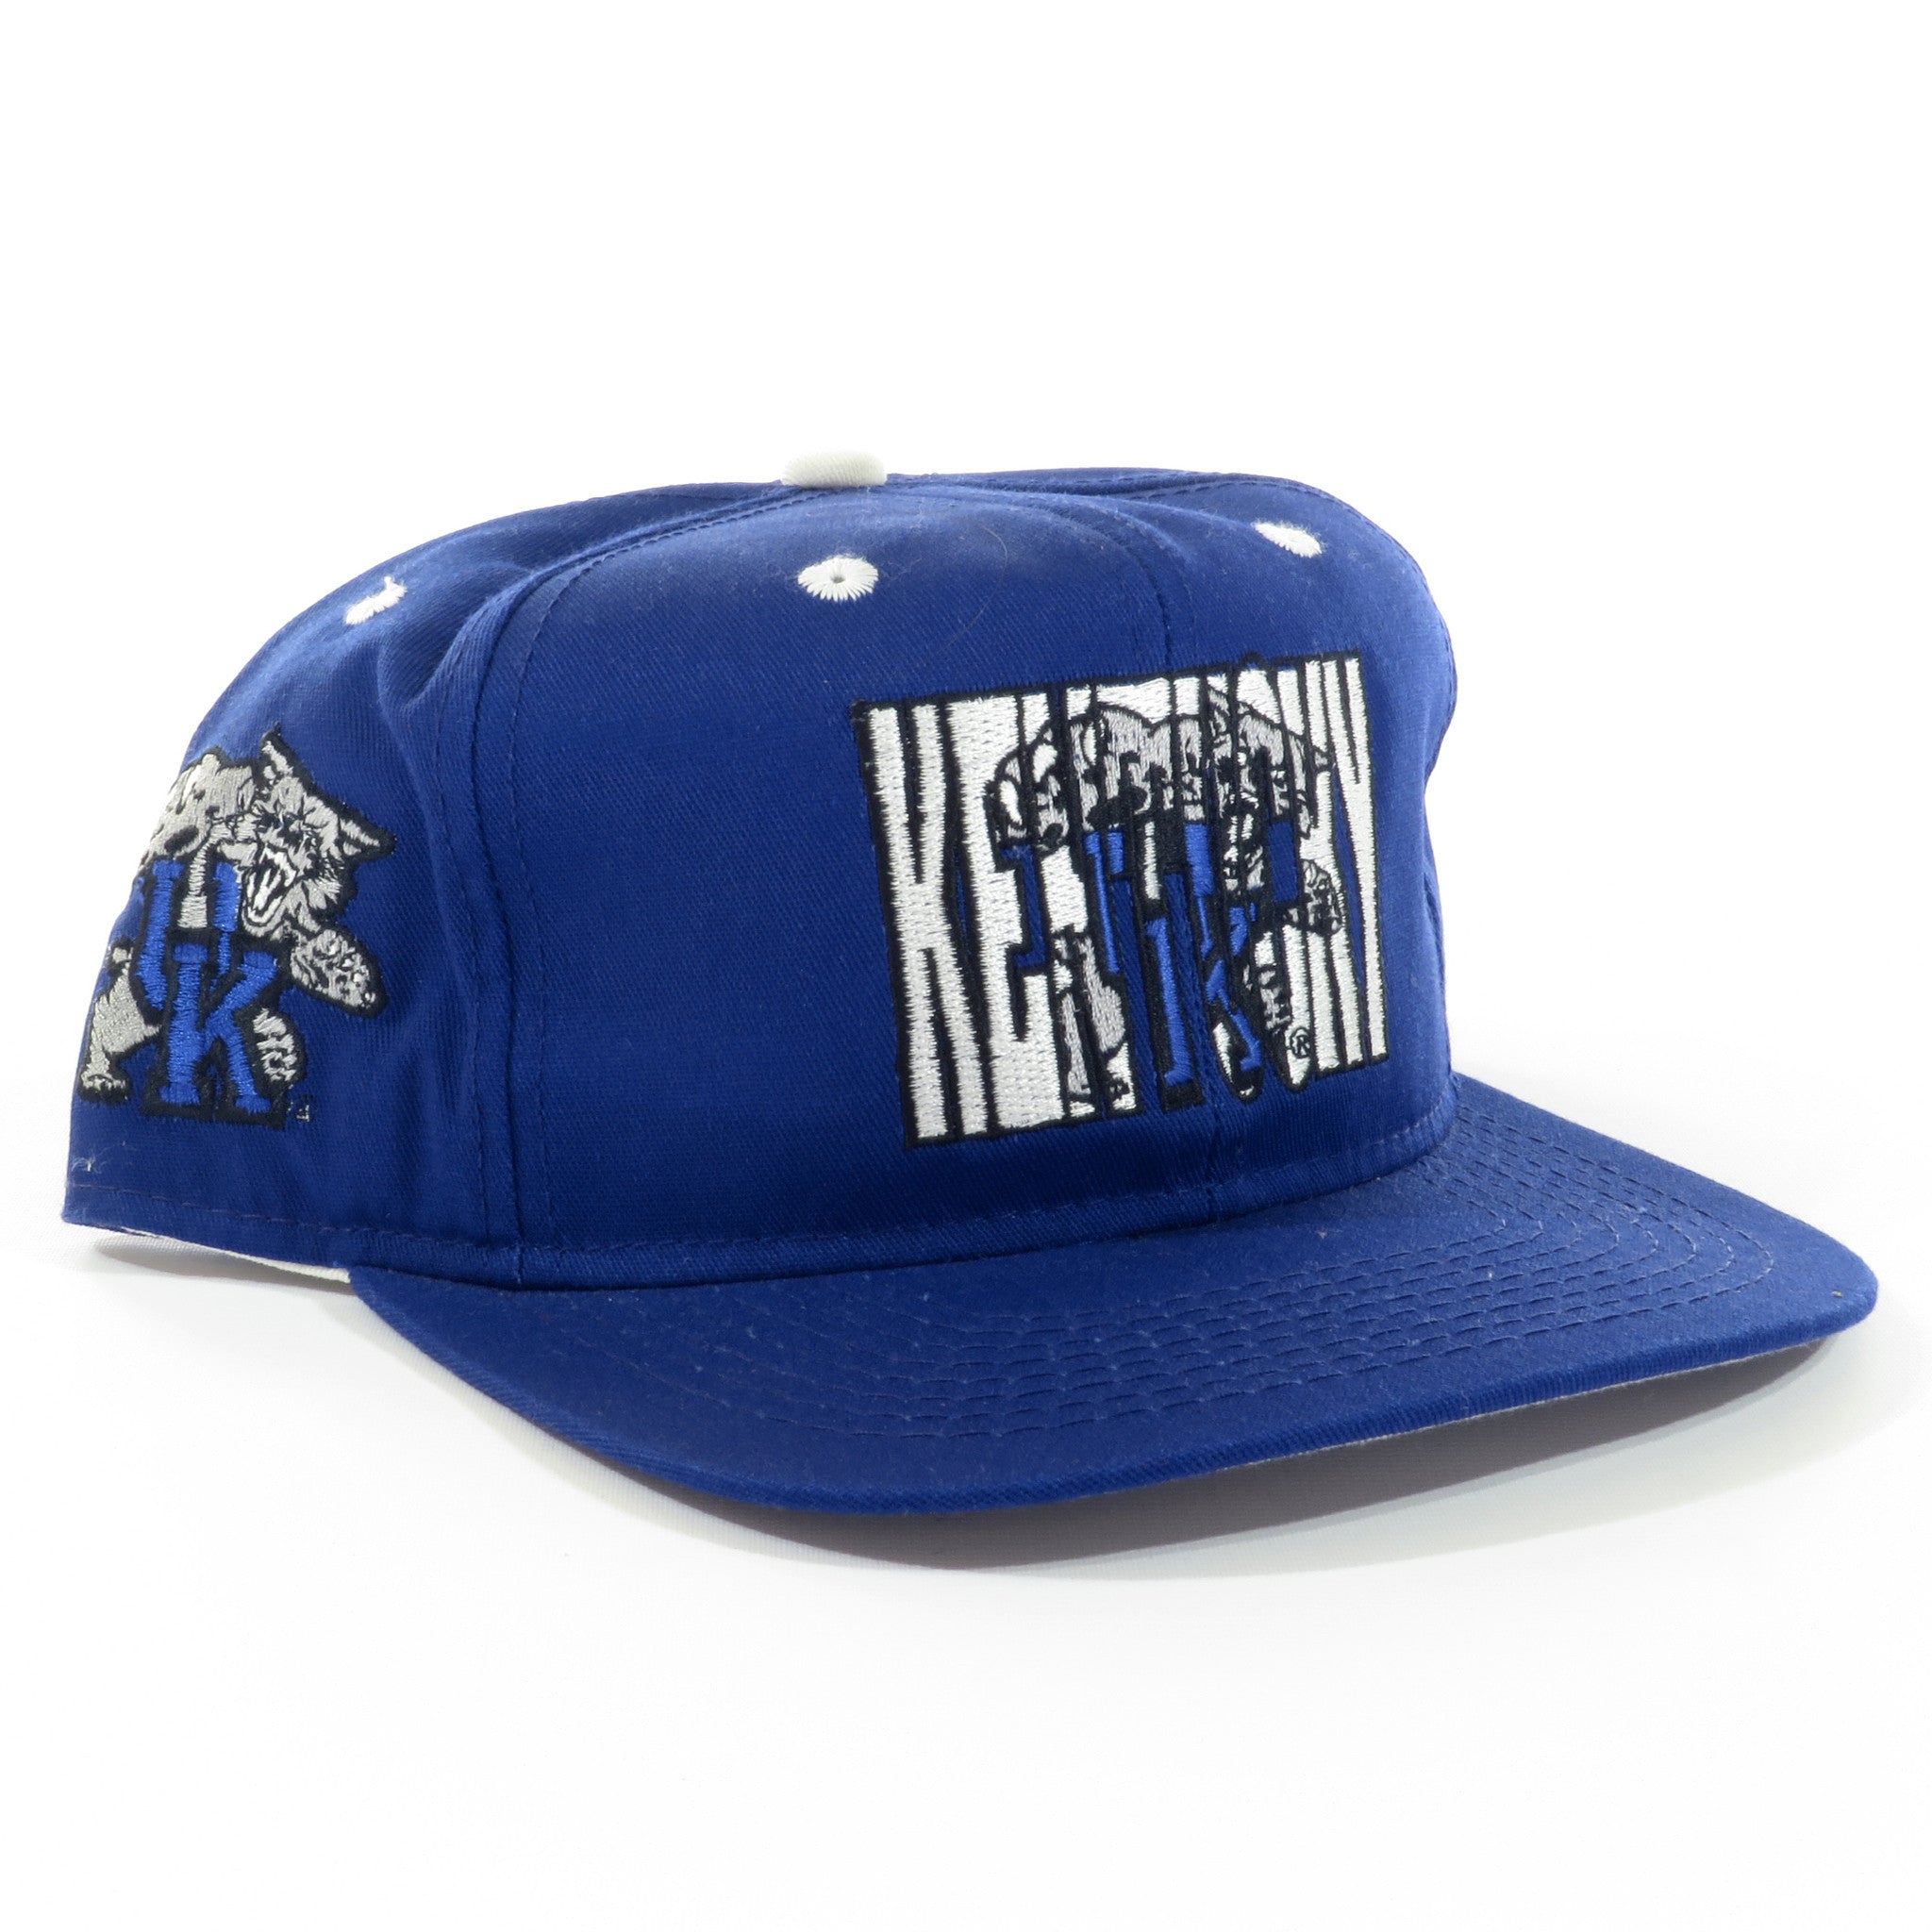 Kentucky Wildcats Snapback Hat